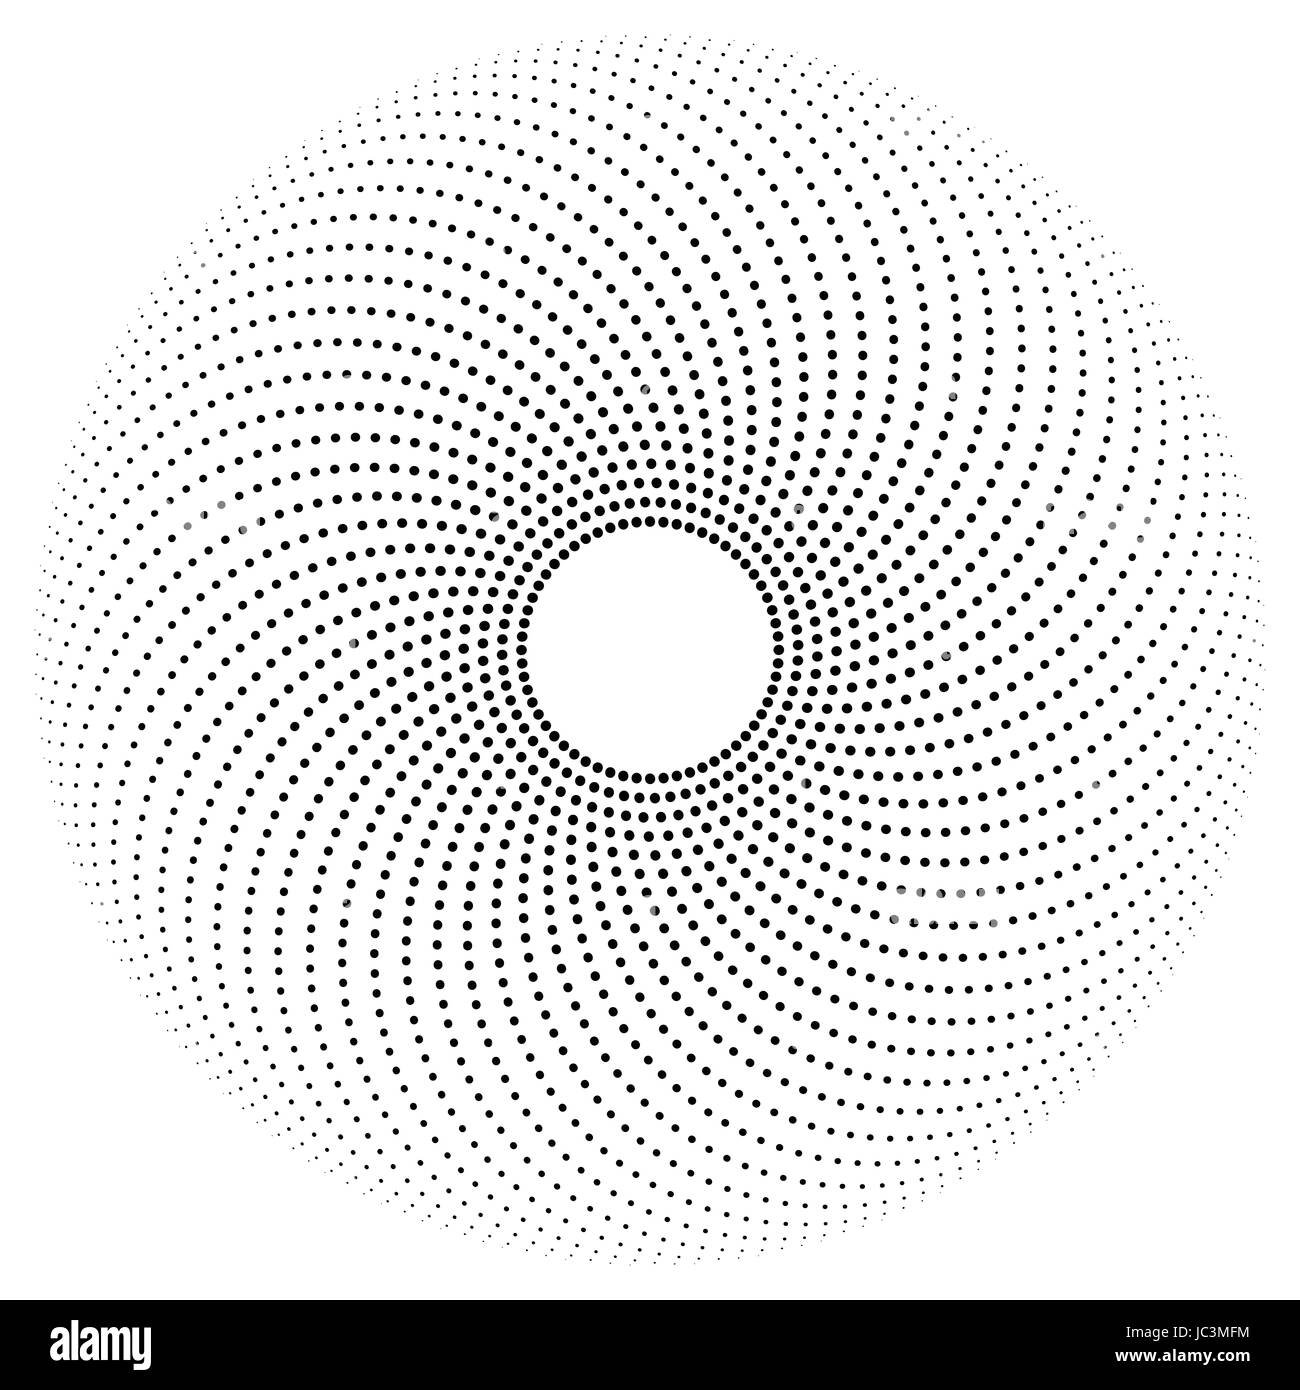 Schwarze Punkte auf die Hälfte Kreis Wege bilden ein Muster. Kreis mit Punkten in verschiedenen Größen mit einem Loch in der Mitte. Stockfoto